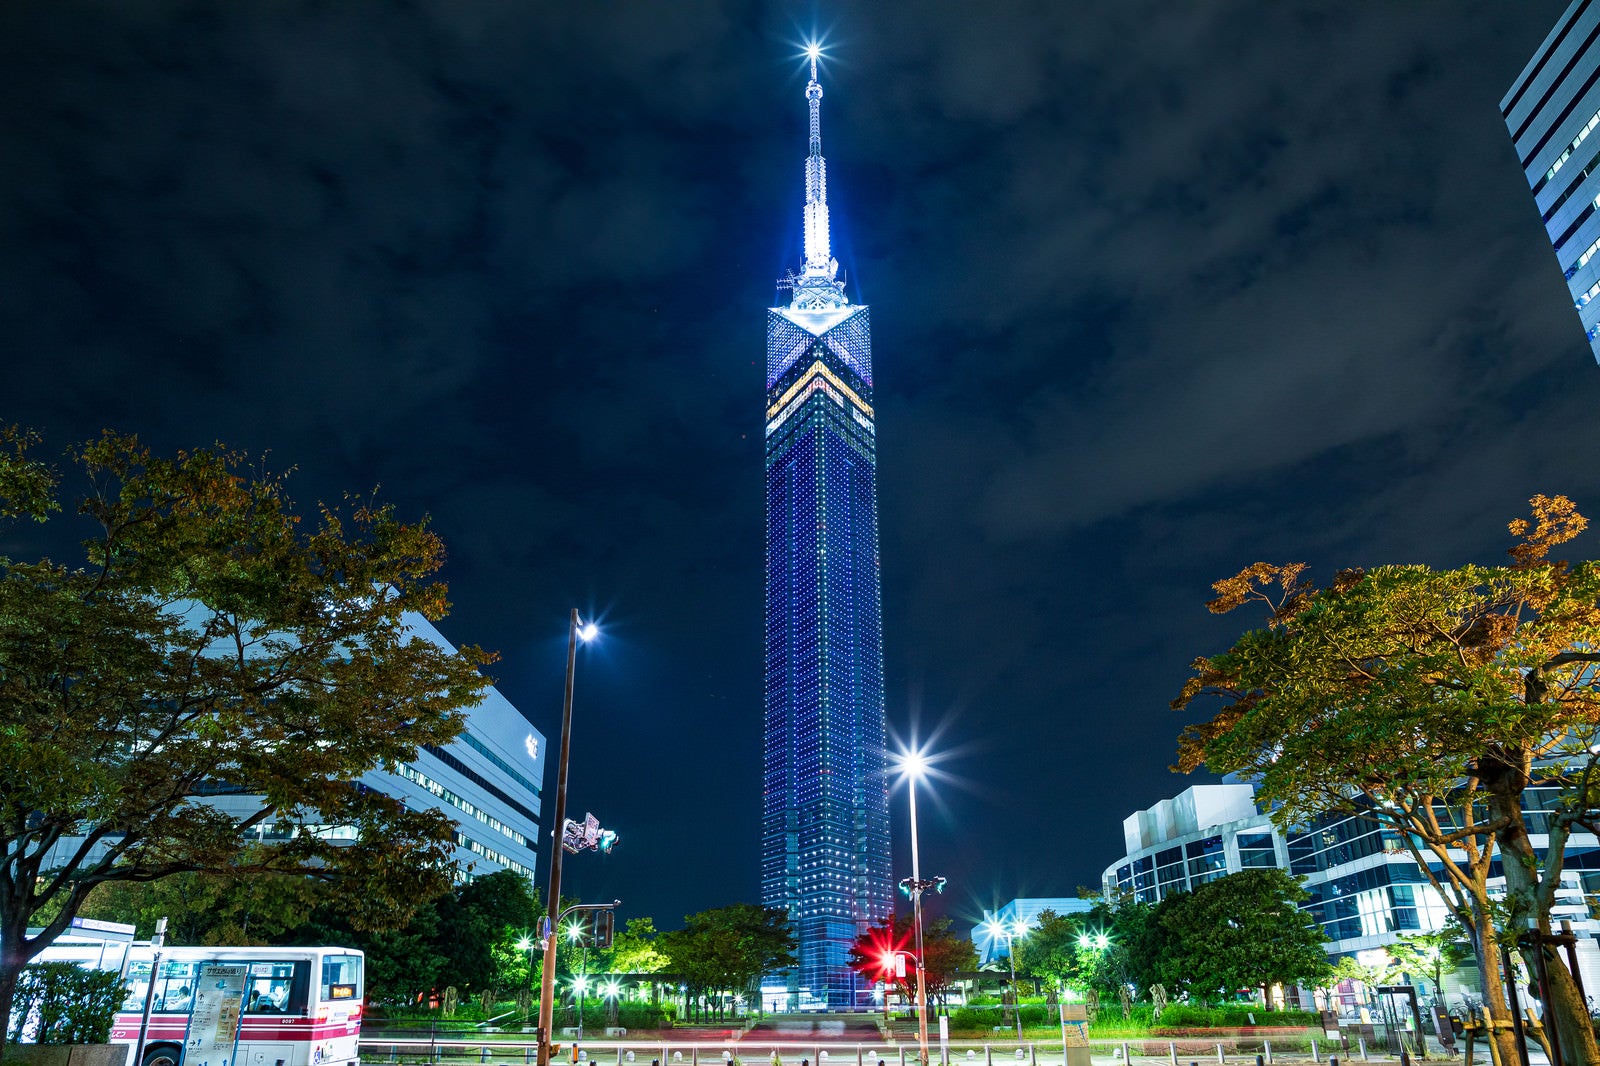 「ライトアップされる夜の福岡タワー」の写真